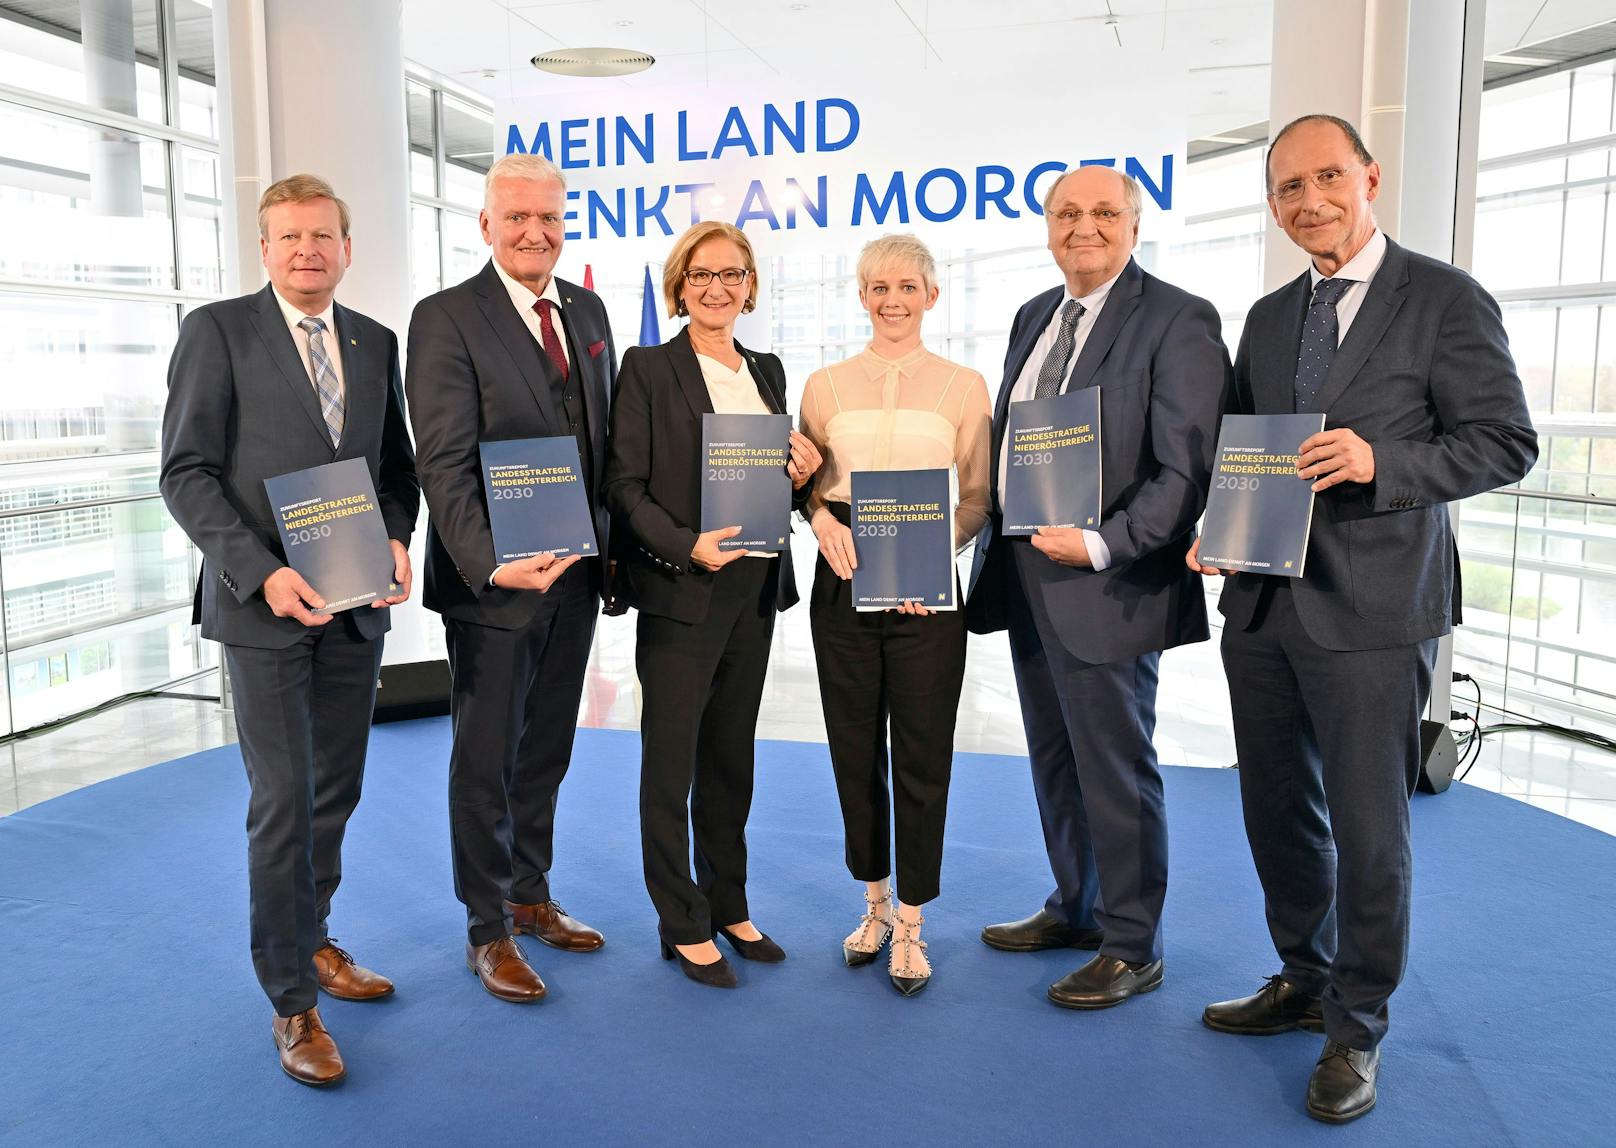 Zukunftsreport zur "Landesstrategie Niederösterreich 2030" präsentiert